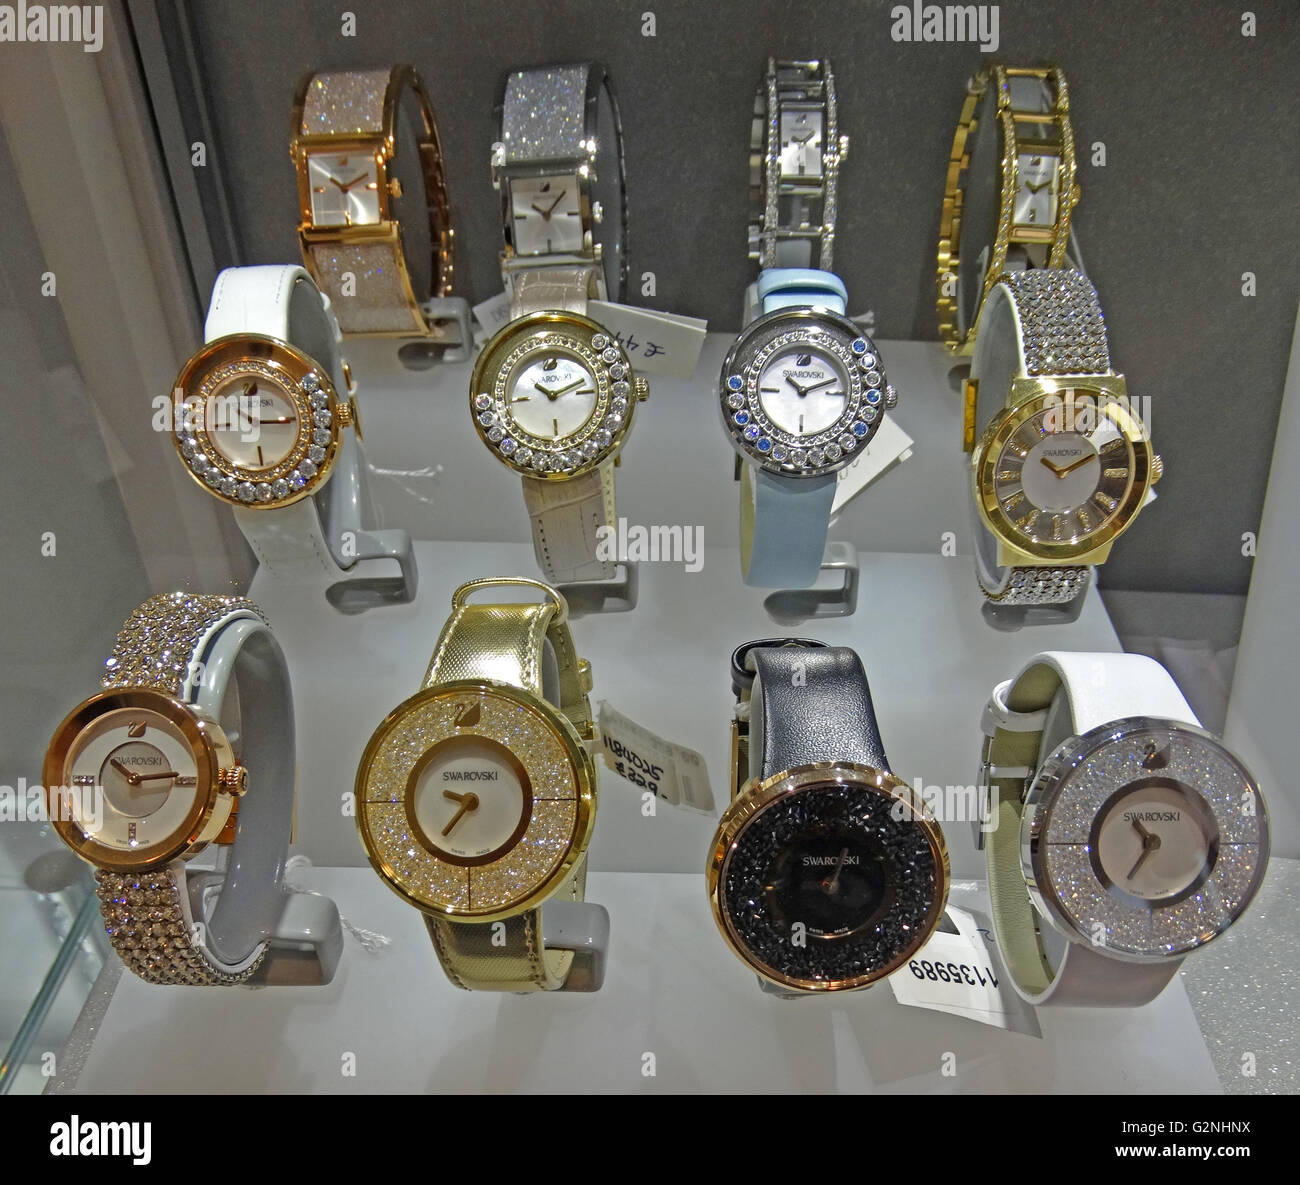 Collection de montres Swarovski. Swarovski est un producteur autrichien de luxe couper verre au plomb. Fondé par Daniel Swarovski (1862-1956). Datée 2014 Banque D'Images